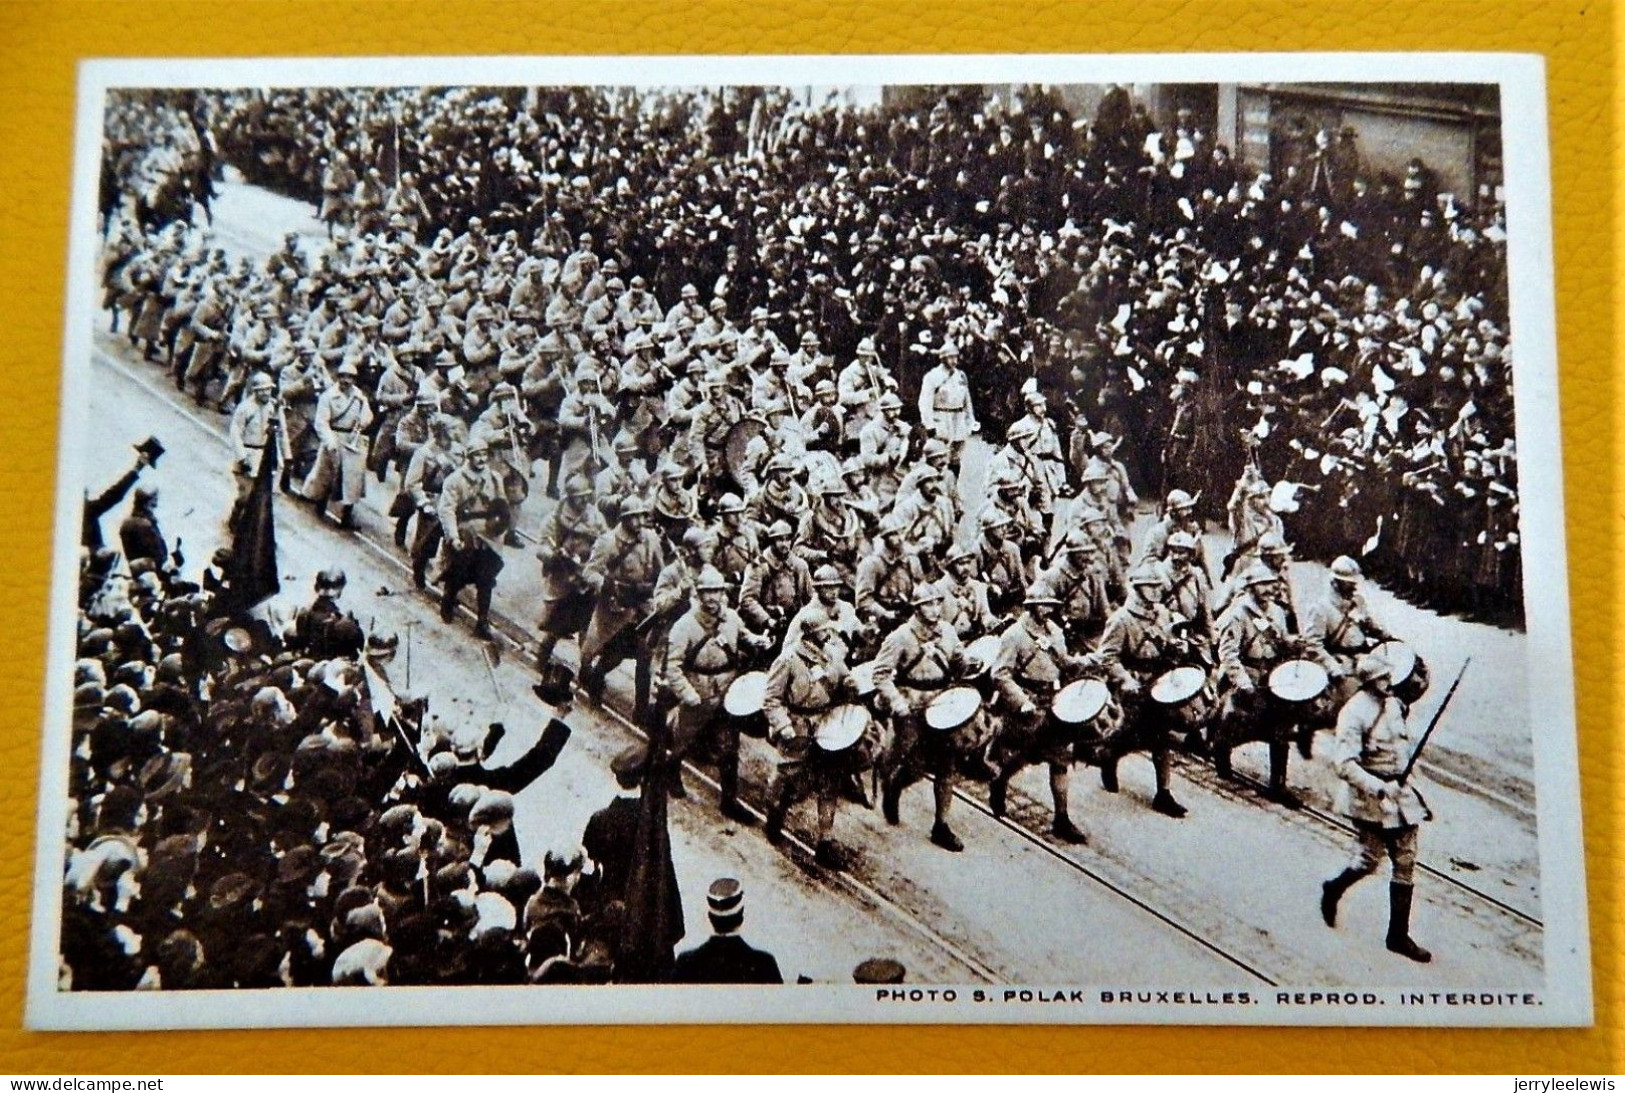 BRUXELLES - CARNET DE 10 CARTES - Rentrée Triomphale Du Roi Albert Et Des Armées Alliées Le 22/11/1918 - Feesten En Evenementen